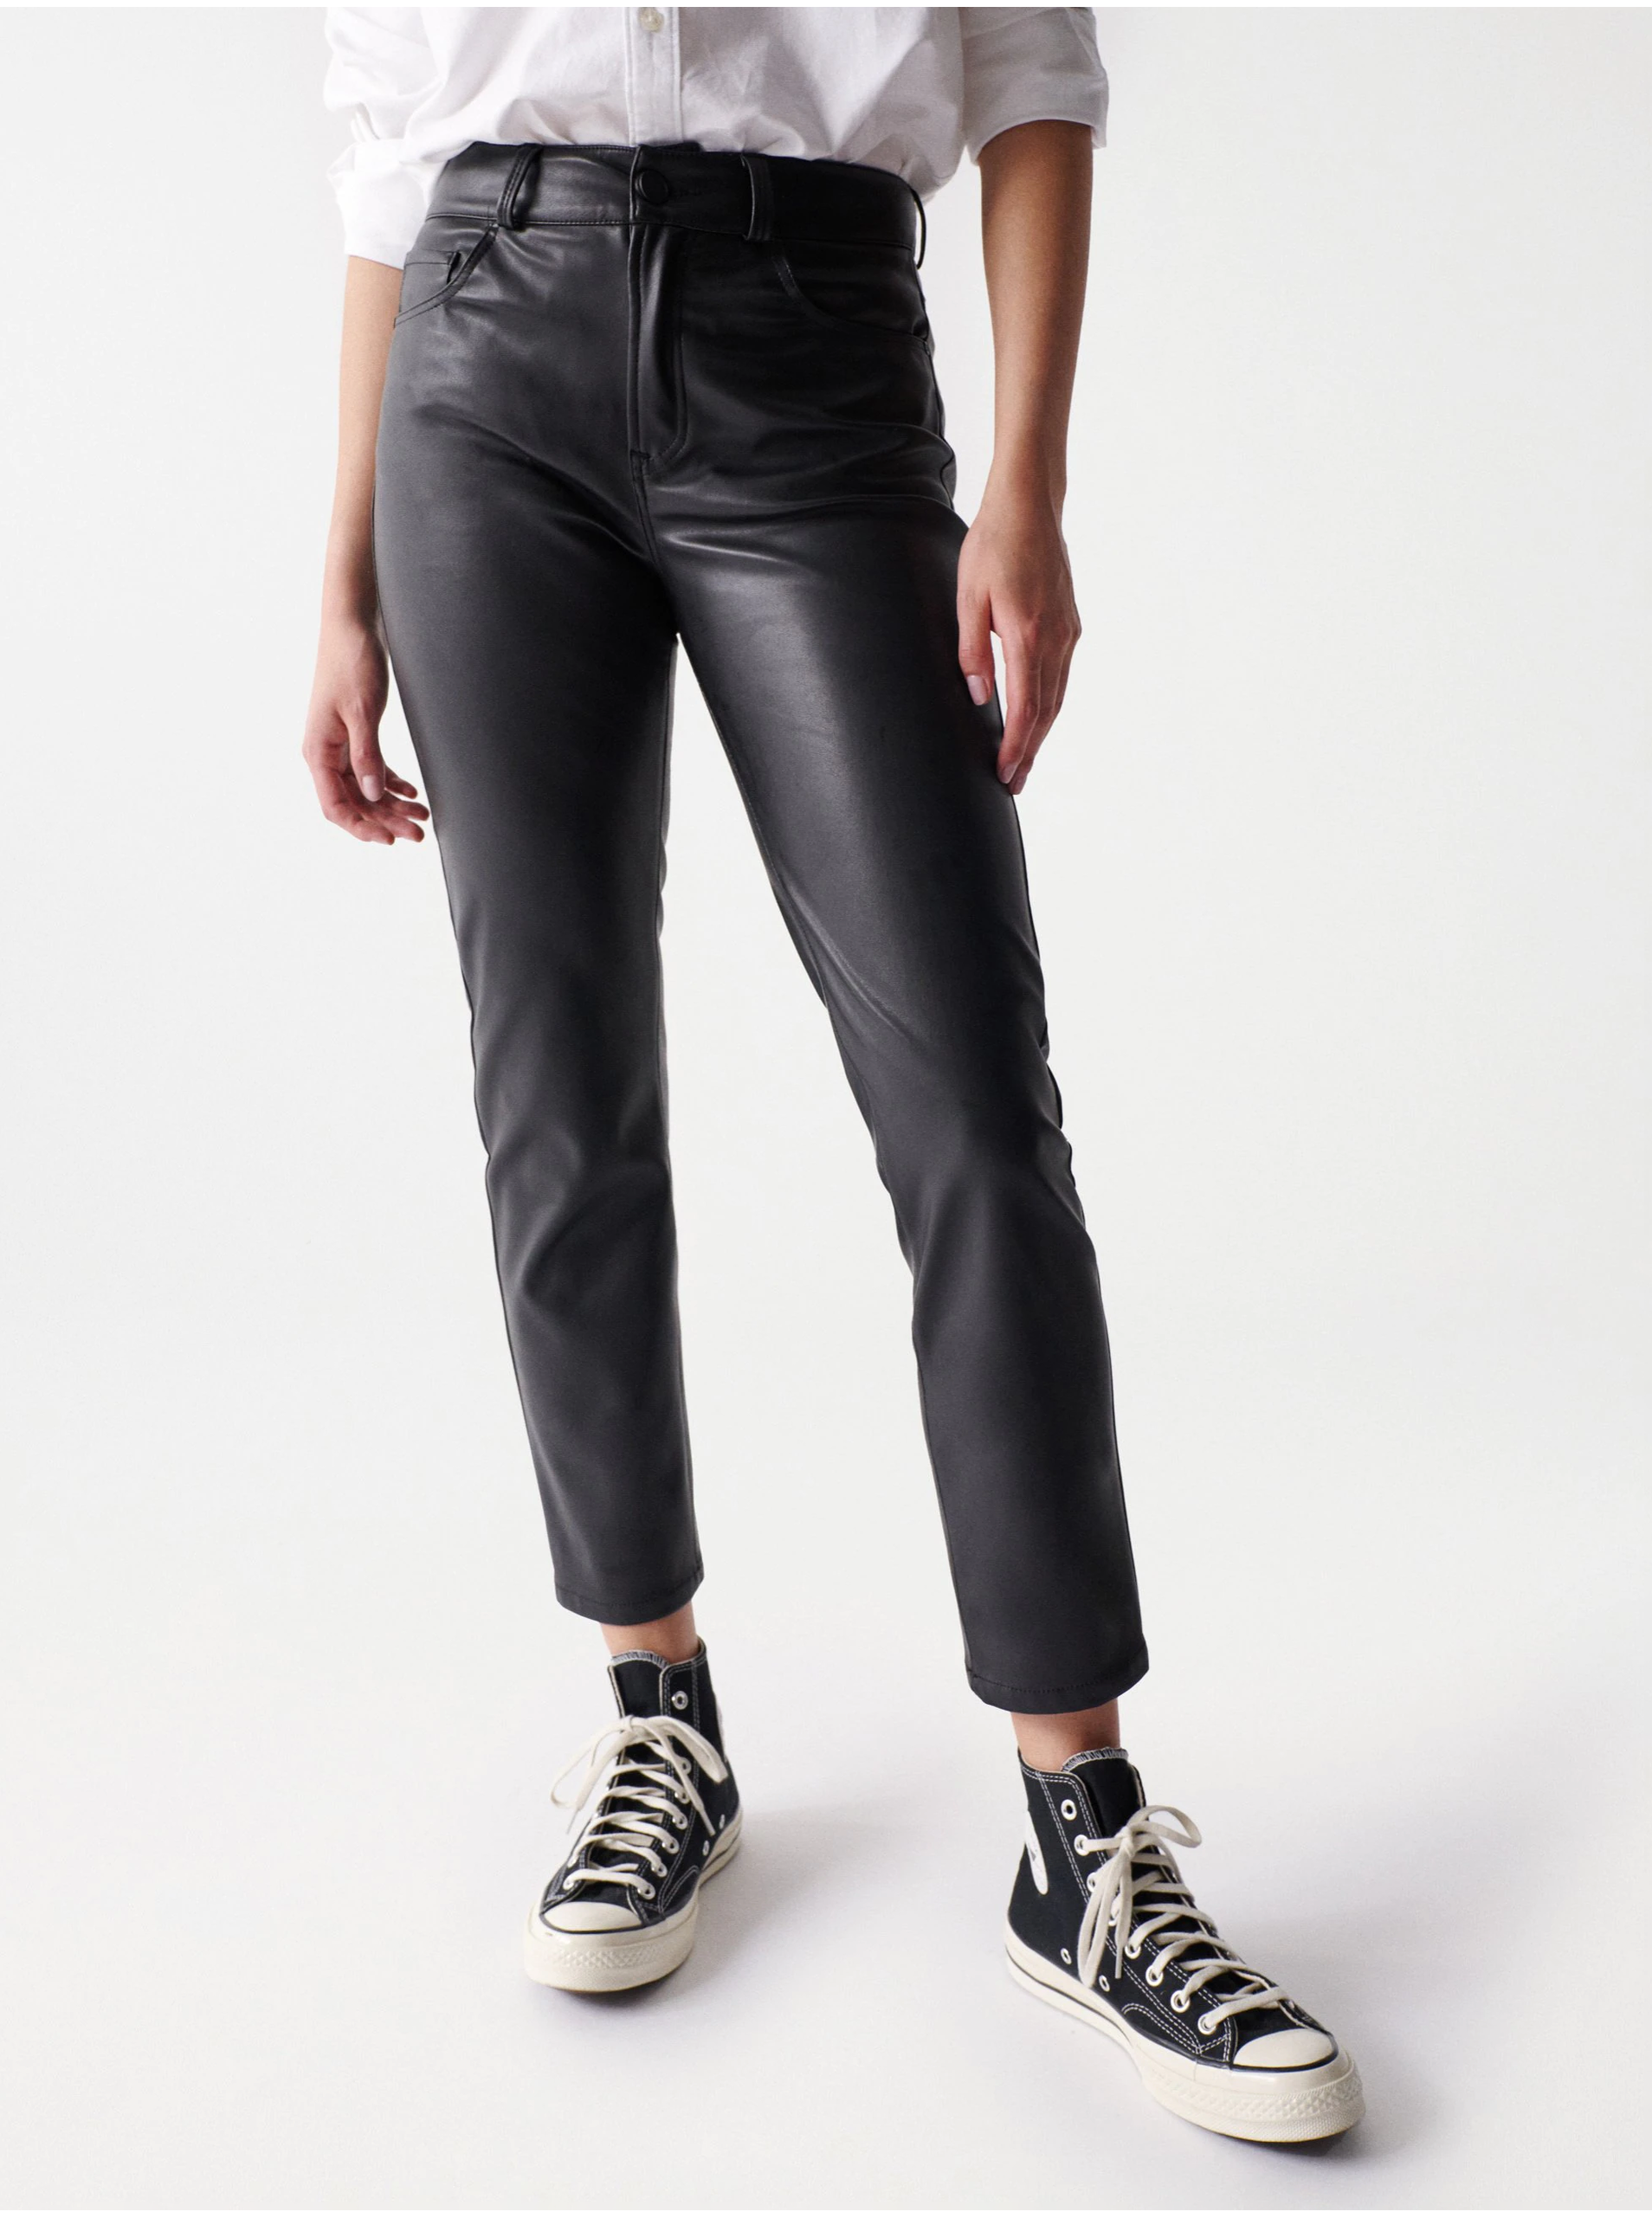 Lacno Čierne dámske skrátené koženkové nohavice Salsa Jeans Nappa